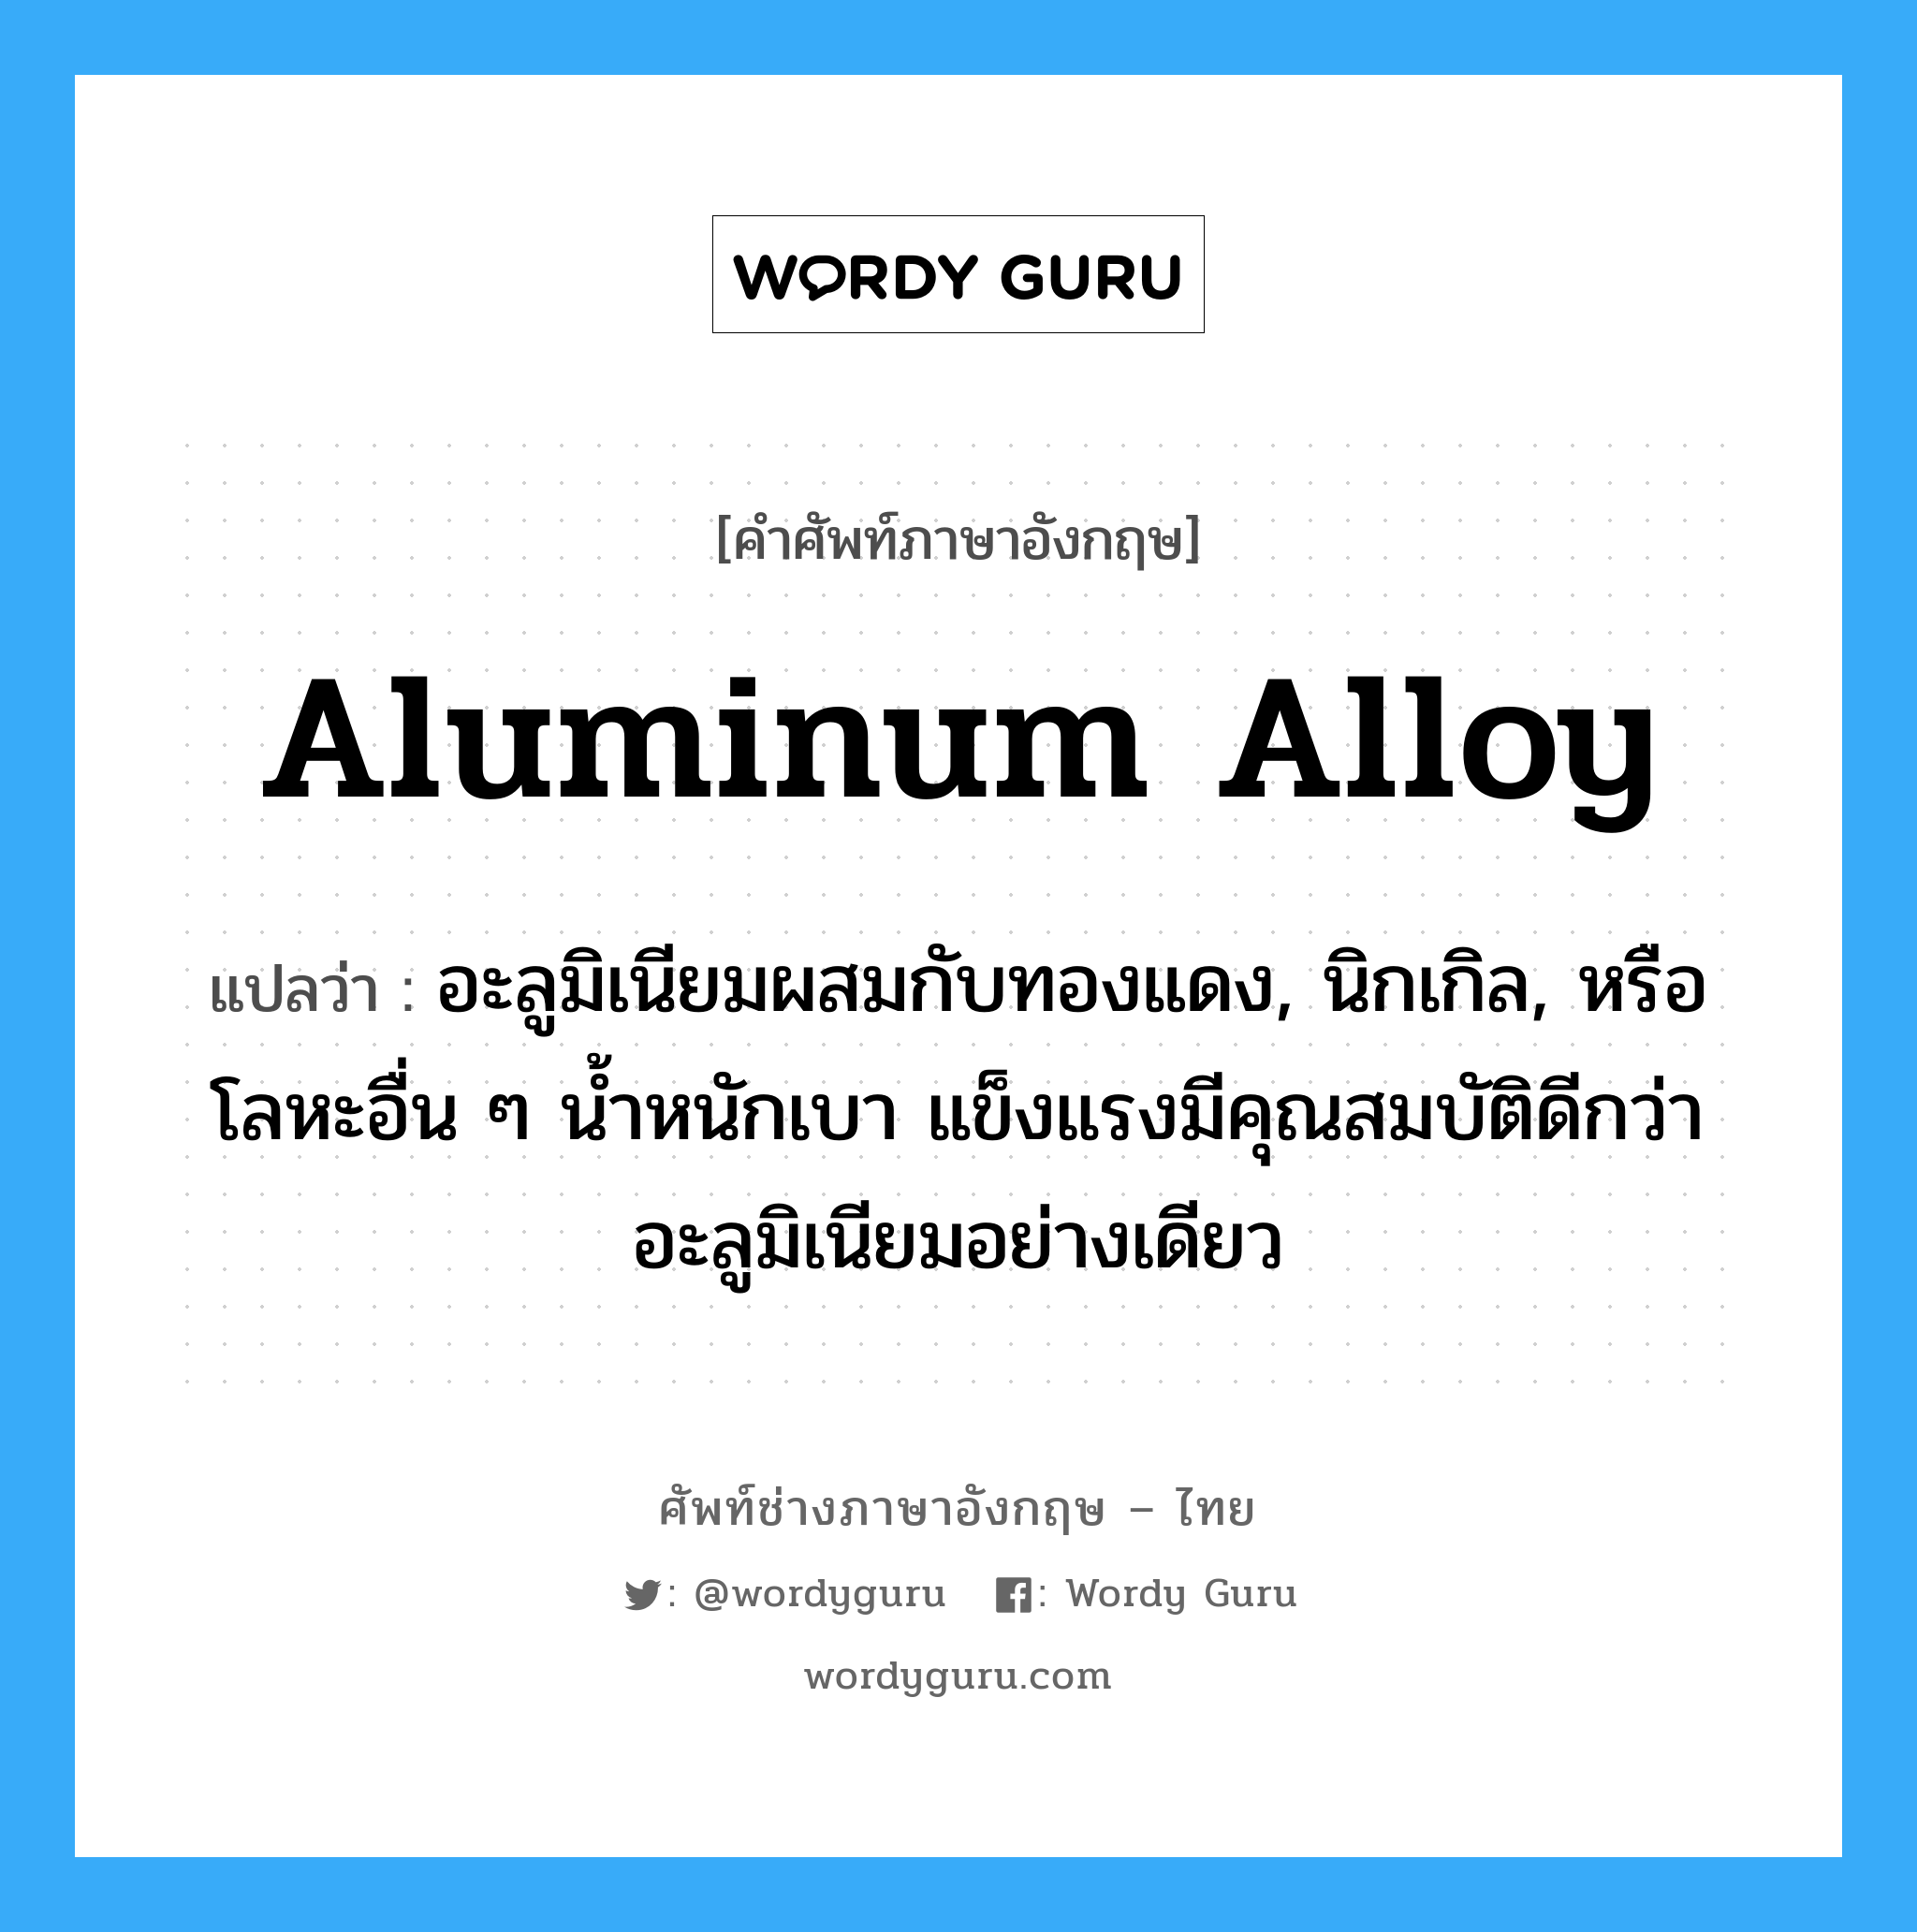 aluminum alloy แปลว่า?, คำศัพท์ช่างภาษาอังกฤษ - ไทย aluminum alloy คำศัพท์ภาษาอังกฤษ aluminum alloy แปลว่า อะลูมิเนียมผสมกับทองแดง, นิกเกิล, หรือโลหะอื่น ๆ น้ำหนักเบา แข็งแรงมีคุณสมบัติดีกว่าอะลูมิเนียมอย่างเดียว